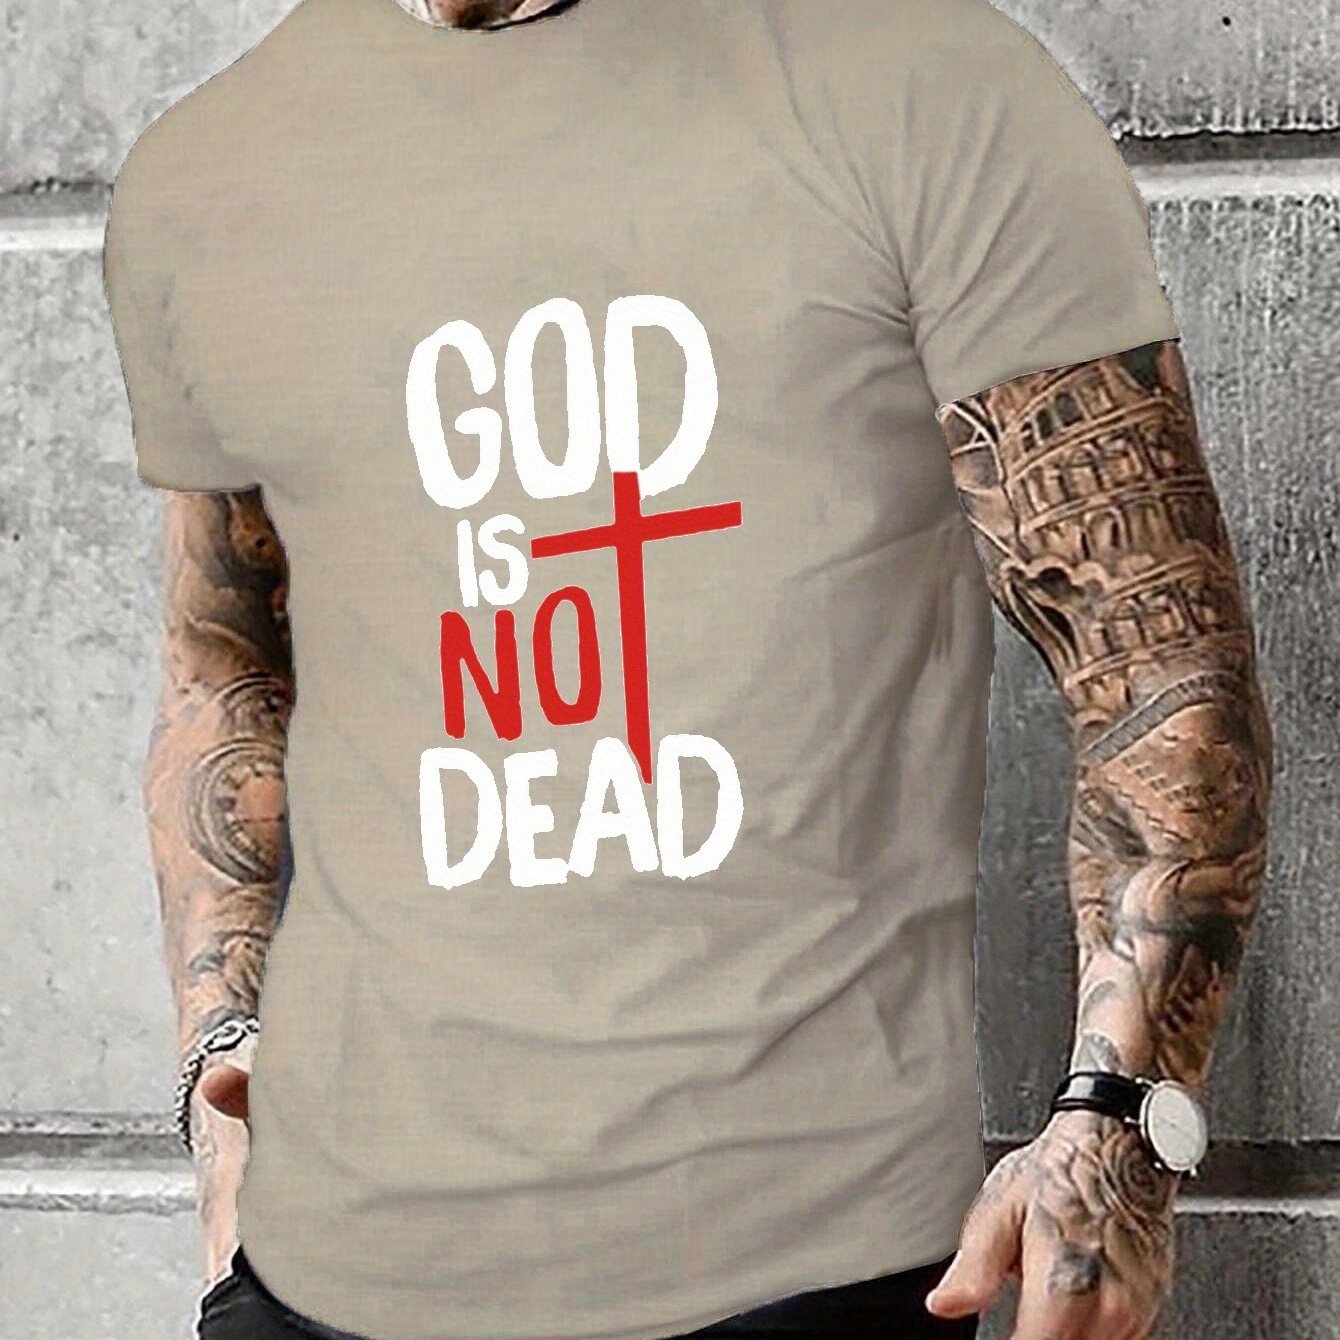 GOD IS NOT DEAD Plus Size Men's Christian T-shirt claimedbygoddesigns